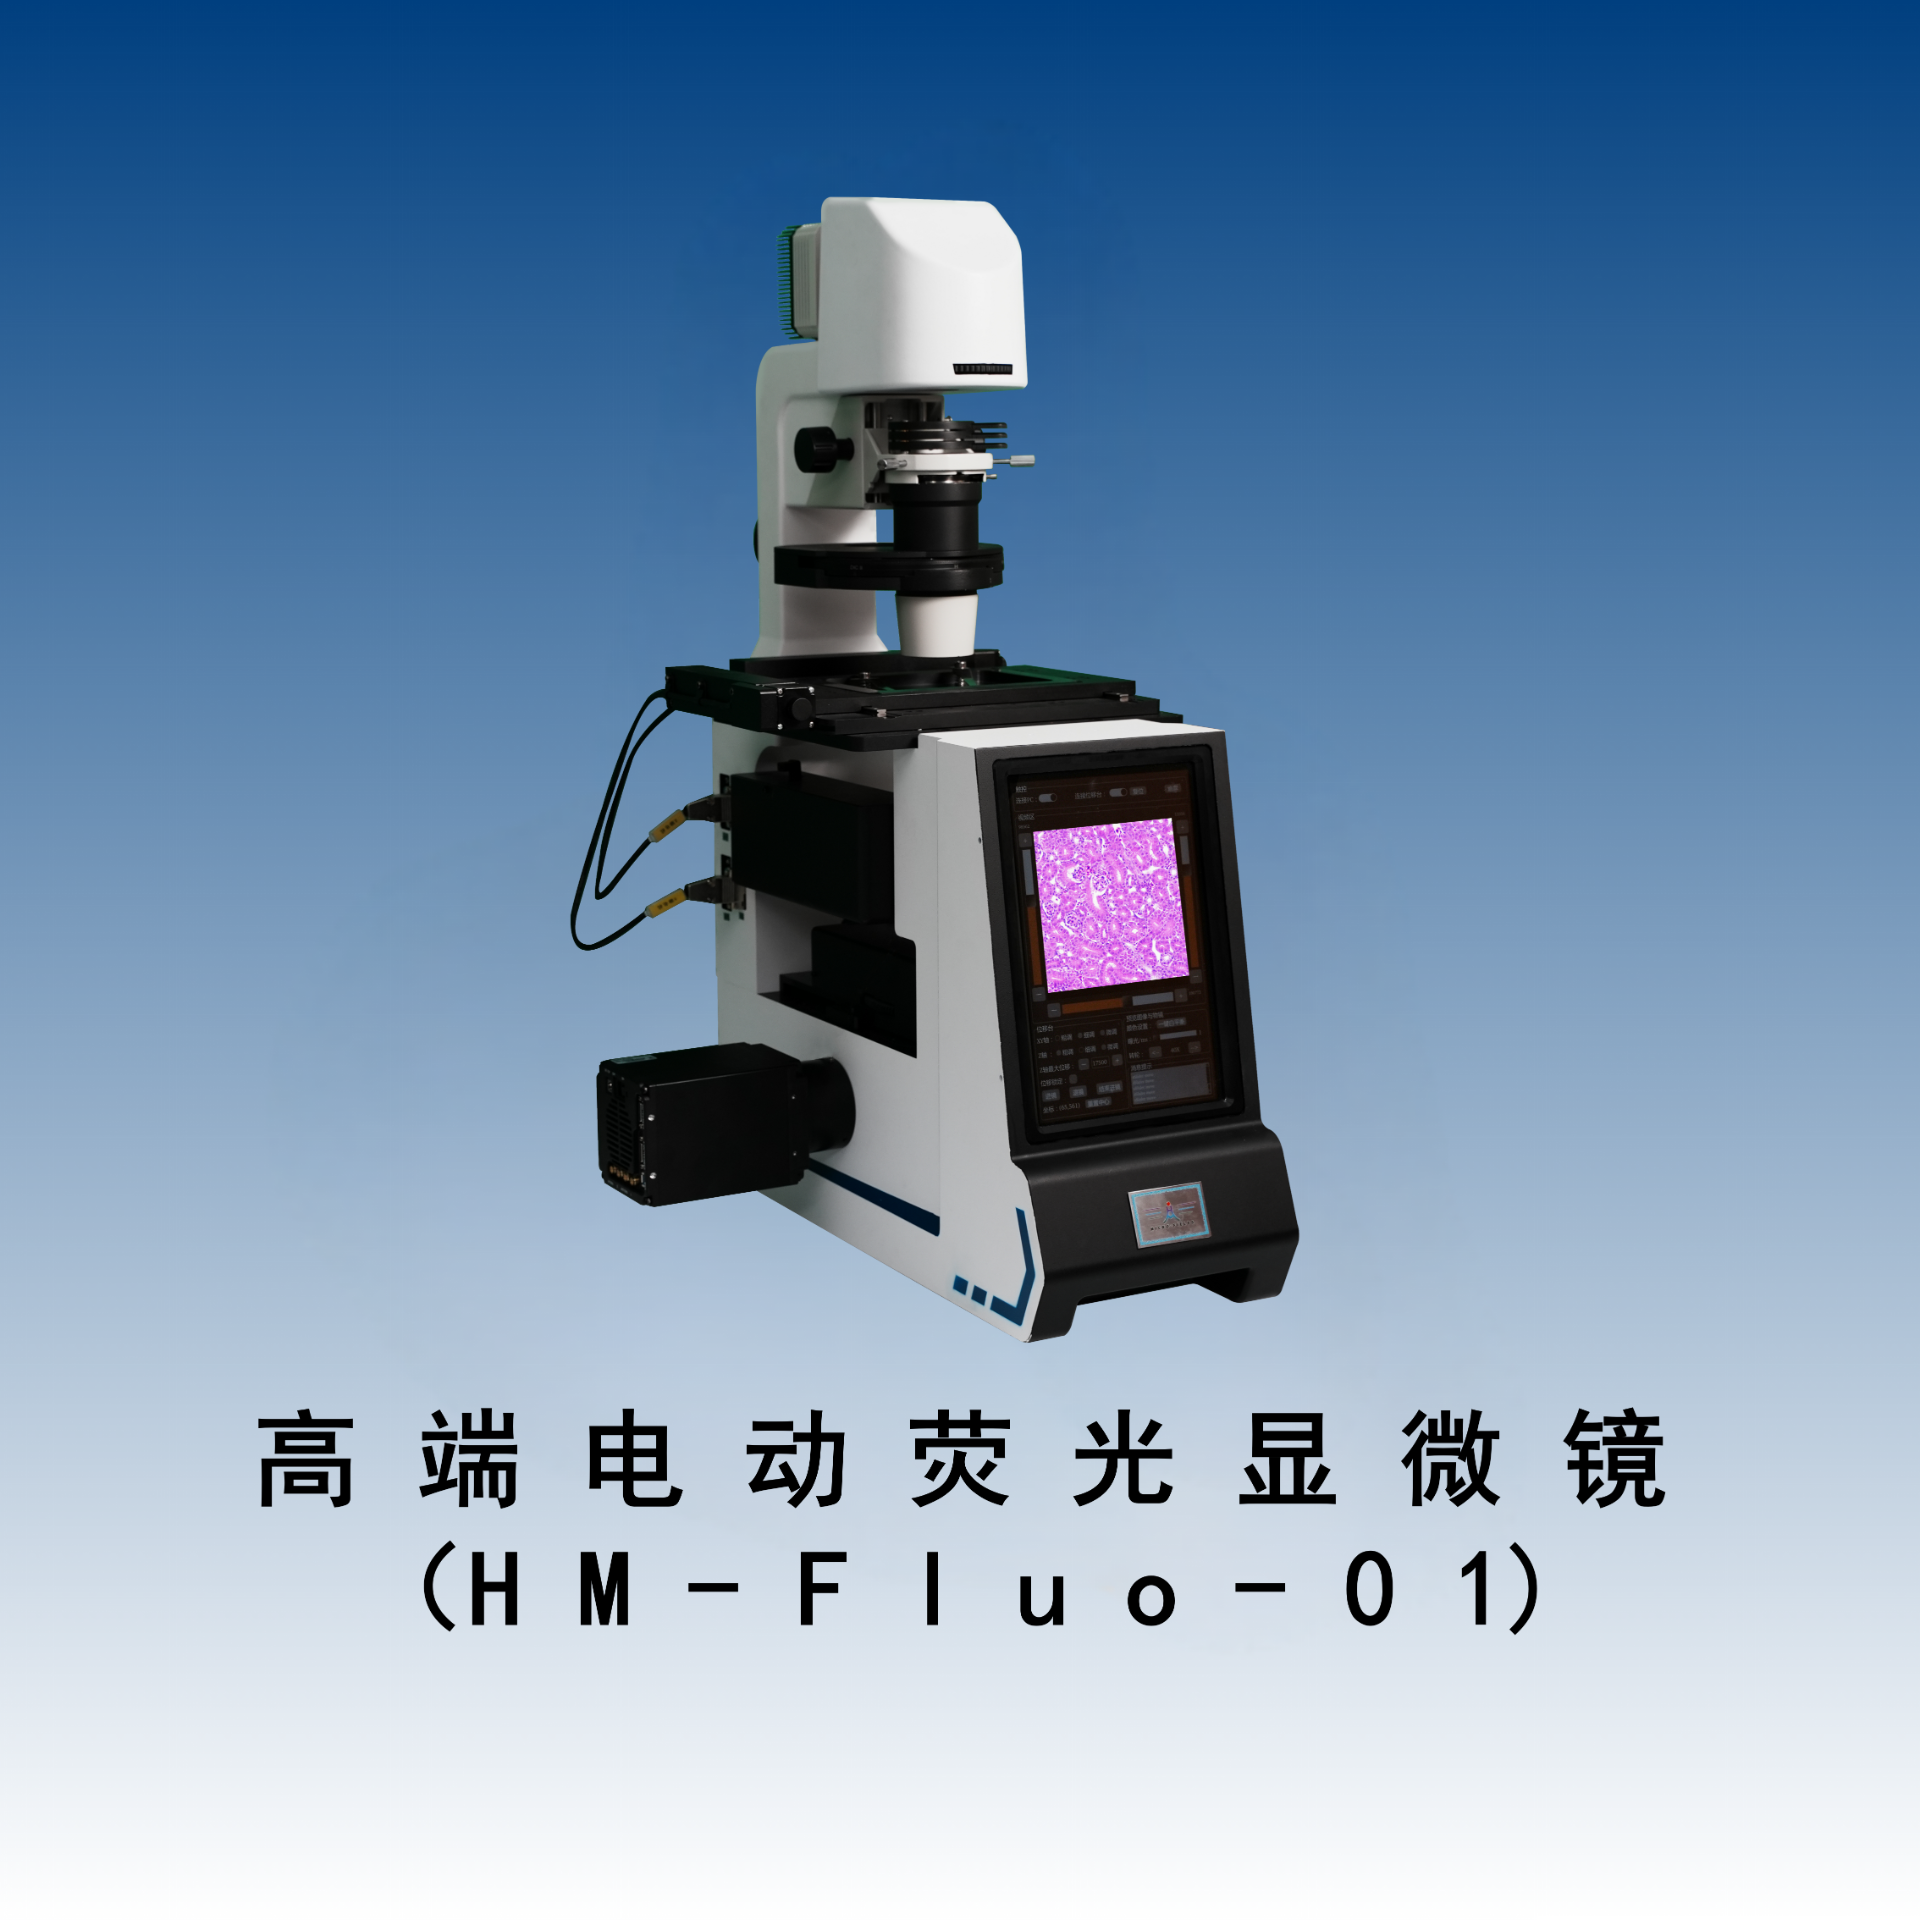 高端电动荧光显微镜（HM-Fluo-01）具有宽场活细胞超分辨成像功能